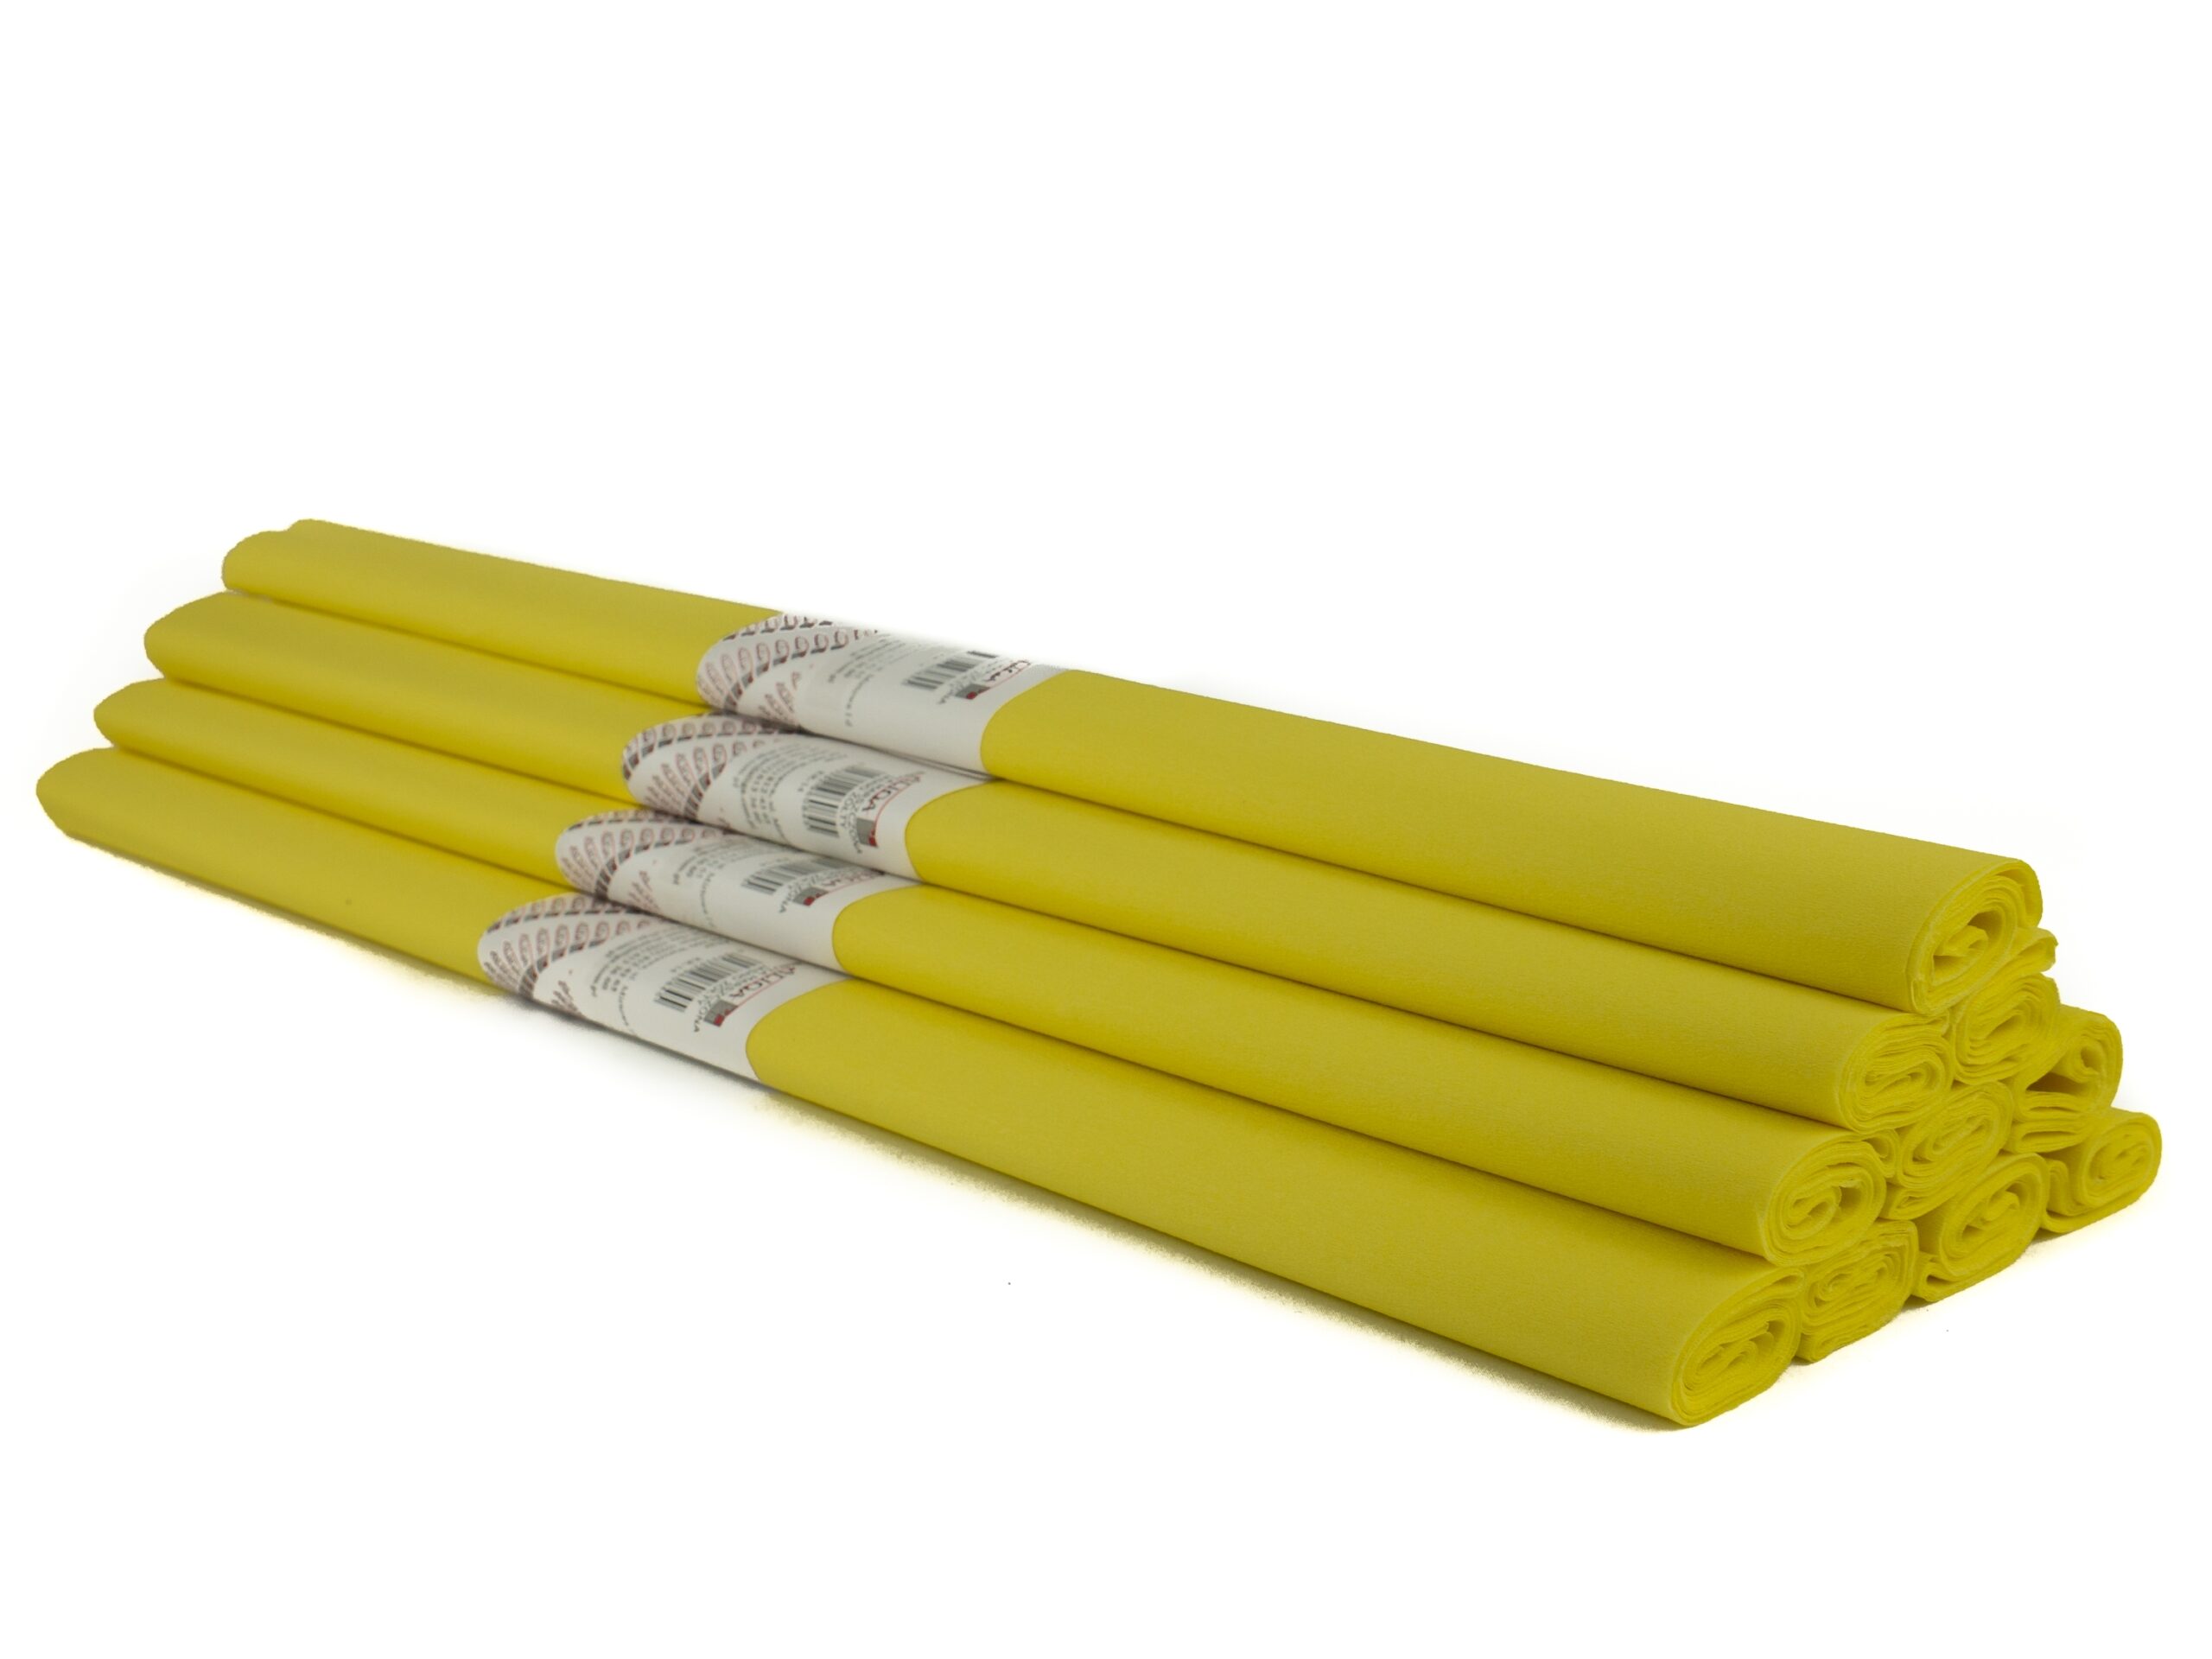 Krepinis popierius 50cmx2m šviesiai geltonas KR-14 ALIGA, B06-615